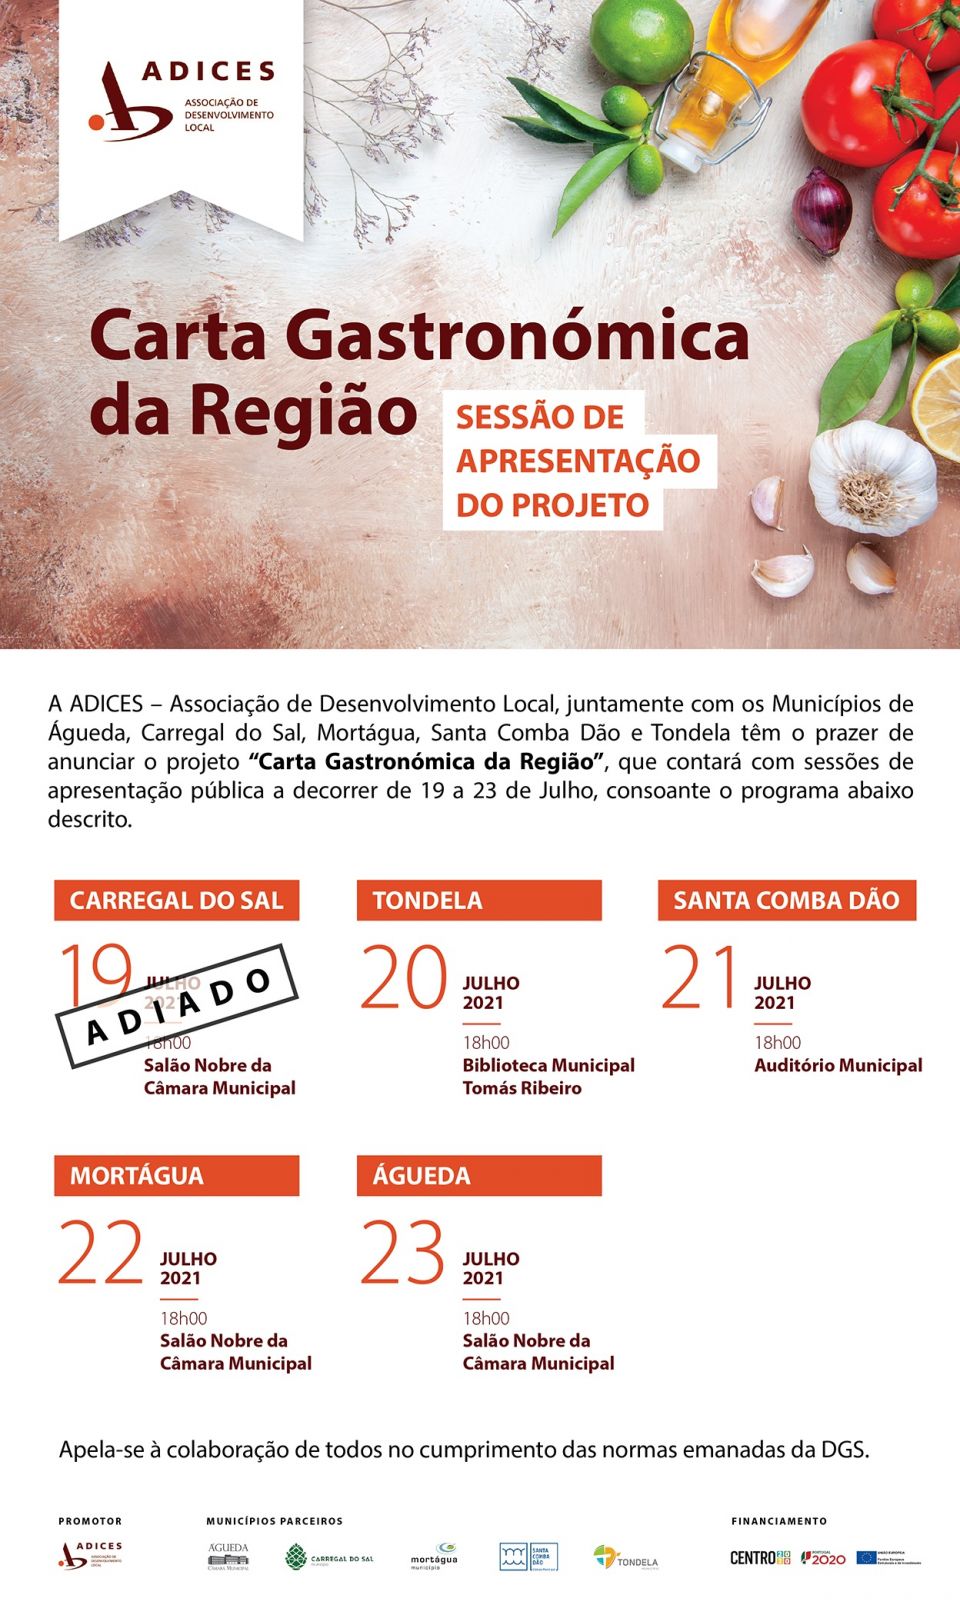 ADICES inicia sessões públicas de lançamento do projeto “Carta Gastronómica da Região”